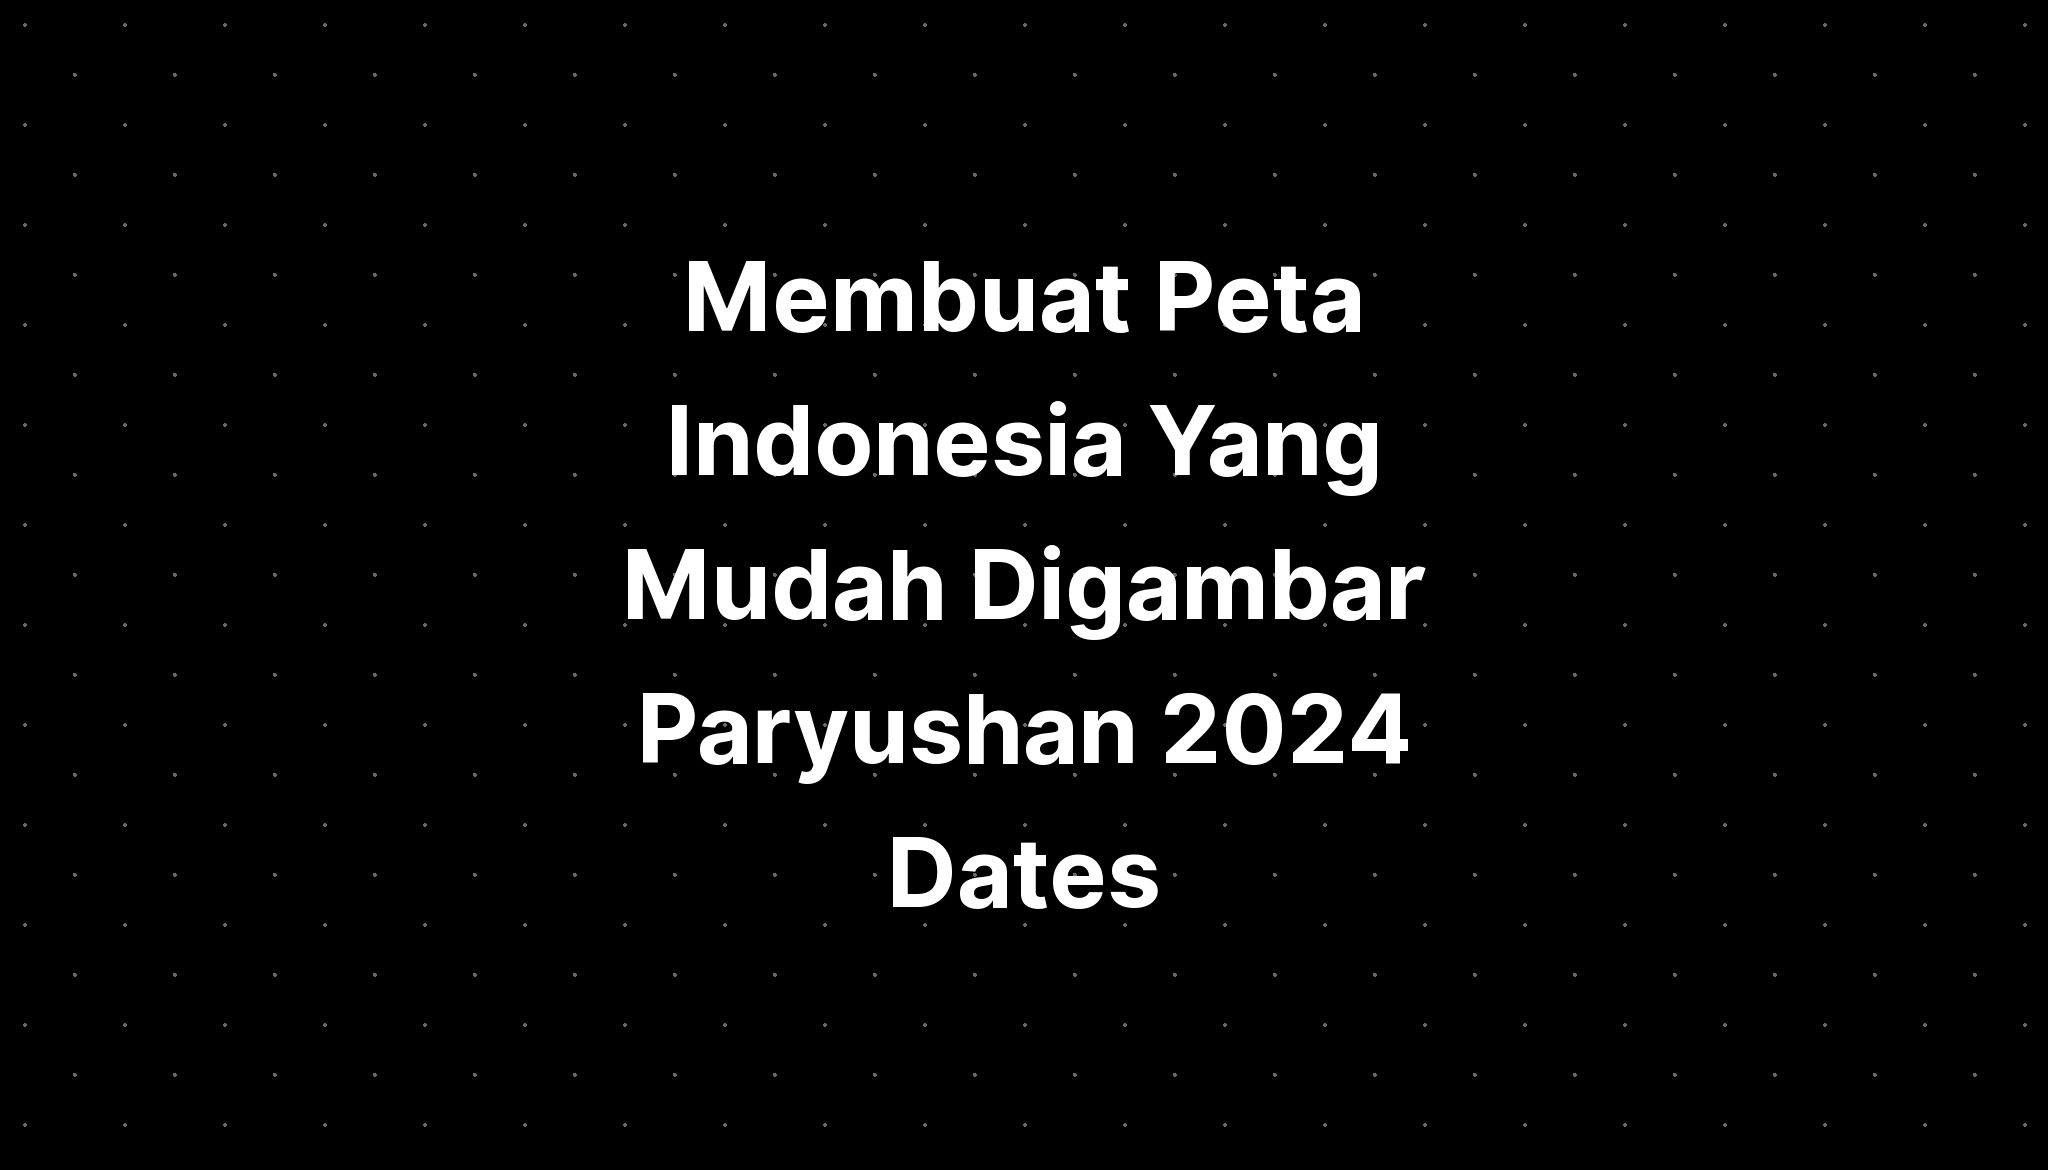 Membuat Peta Indonesia Yang Mudah Digambar Paryushan 2024 Dates IMAGESEE